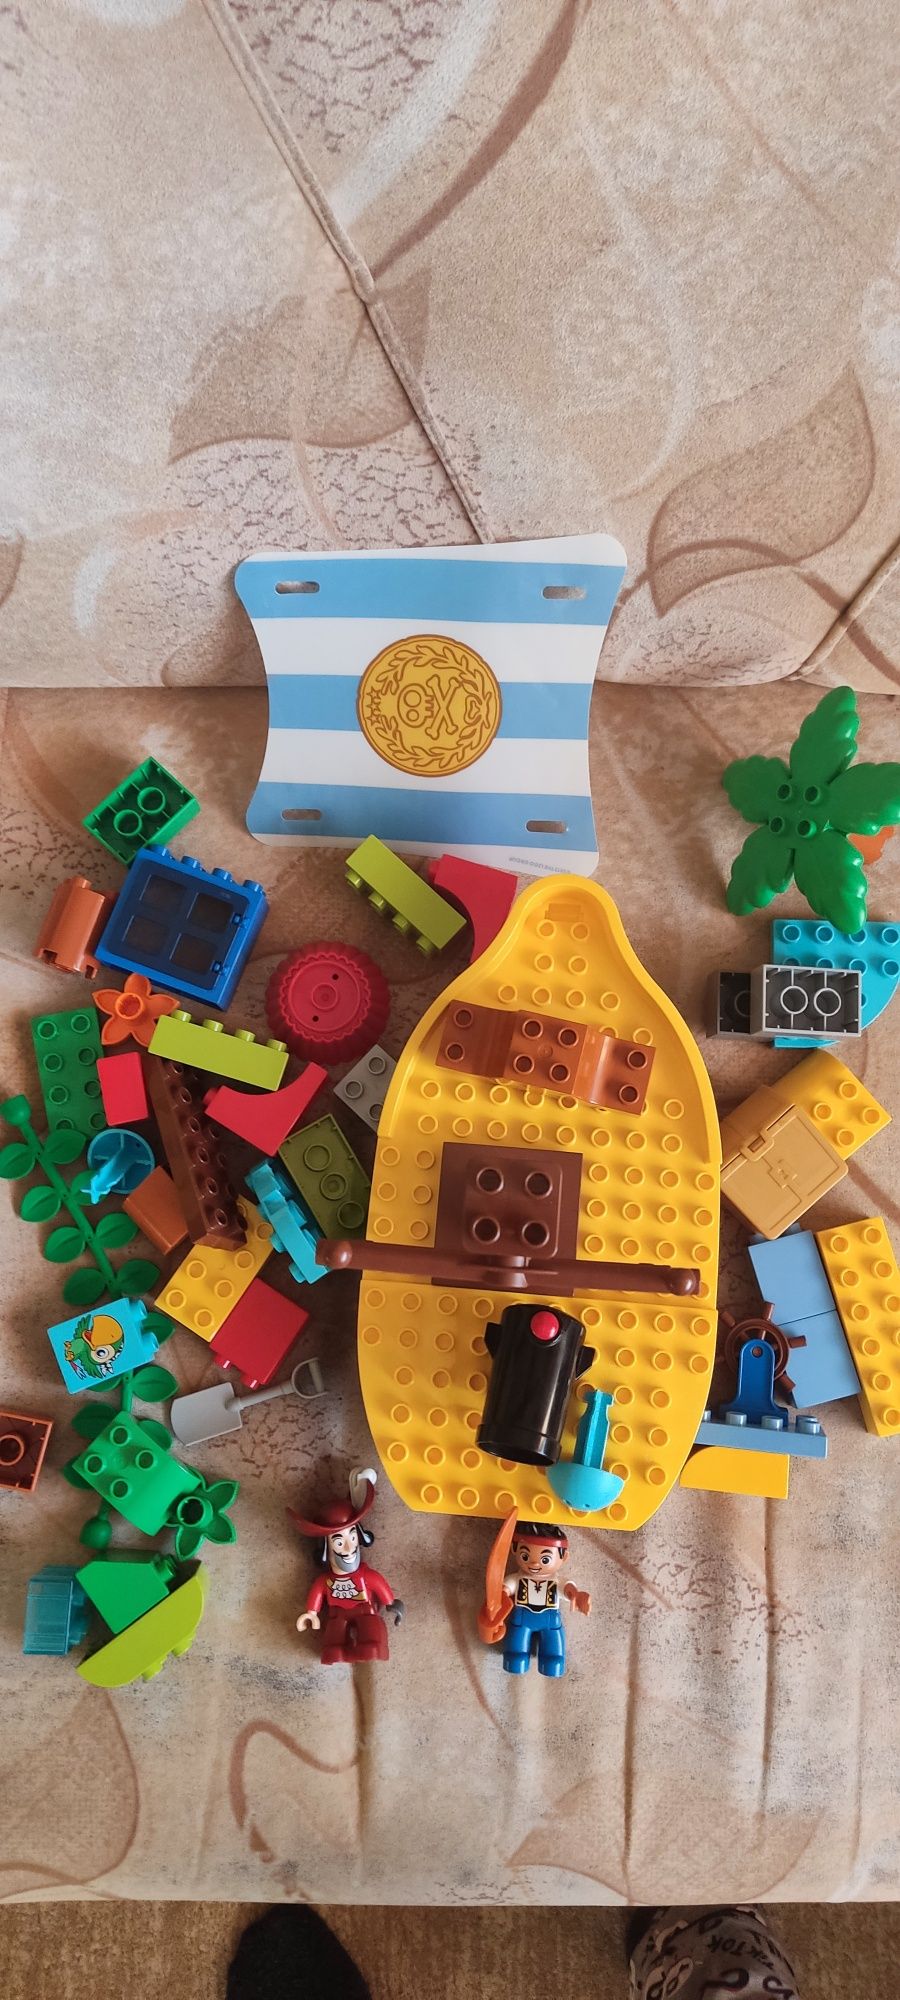 Продам конструктор lego. Пиратский корабль